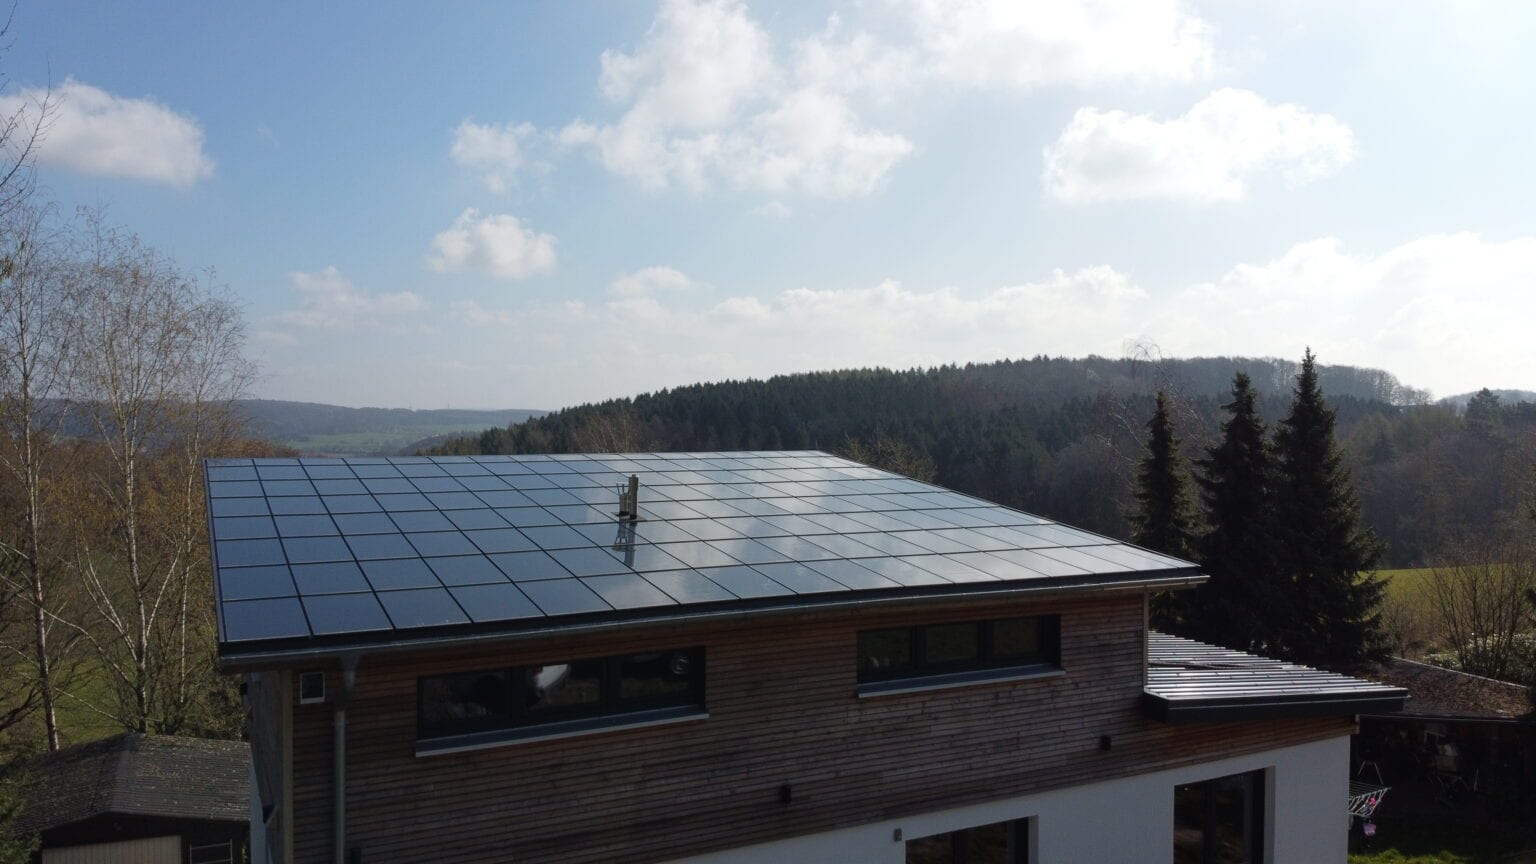 Ennogie-Solardach in Osnabrück: Dachfläche mit Photovoltaikmodulen im Vordergrund, blauer Himmel und Berge im Hintergrund